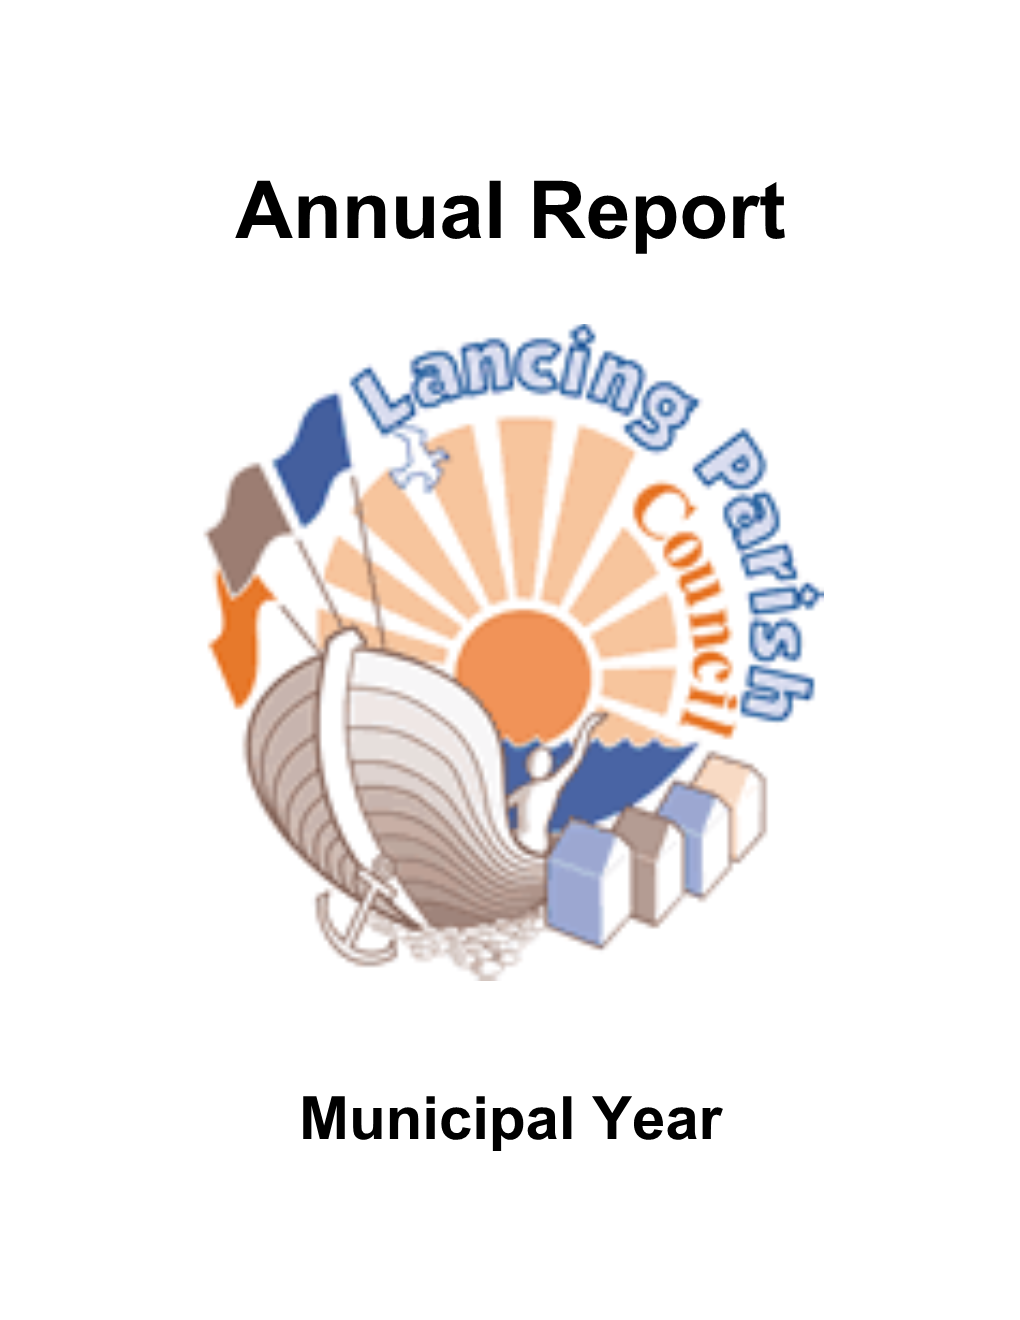 Annual Report s4